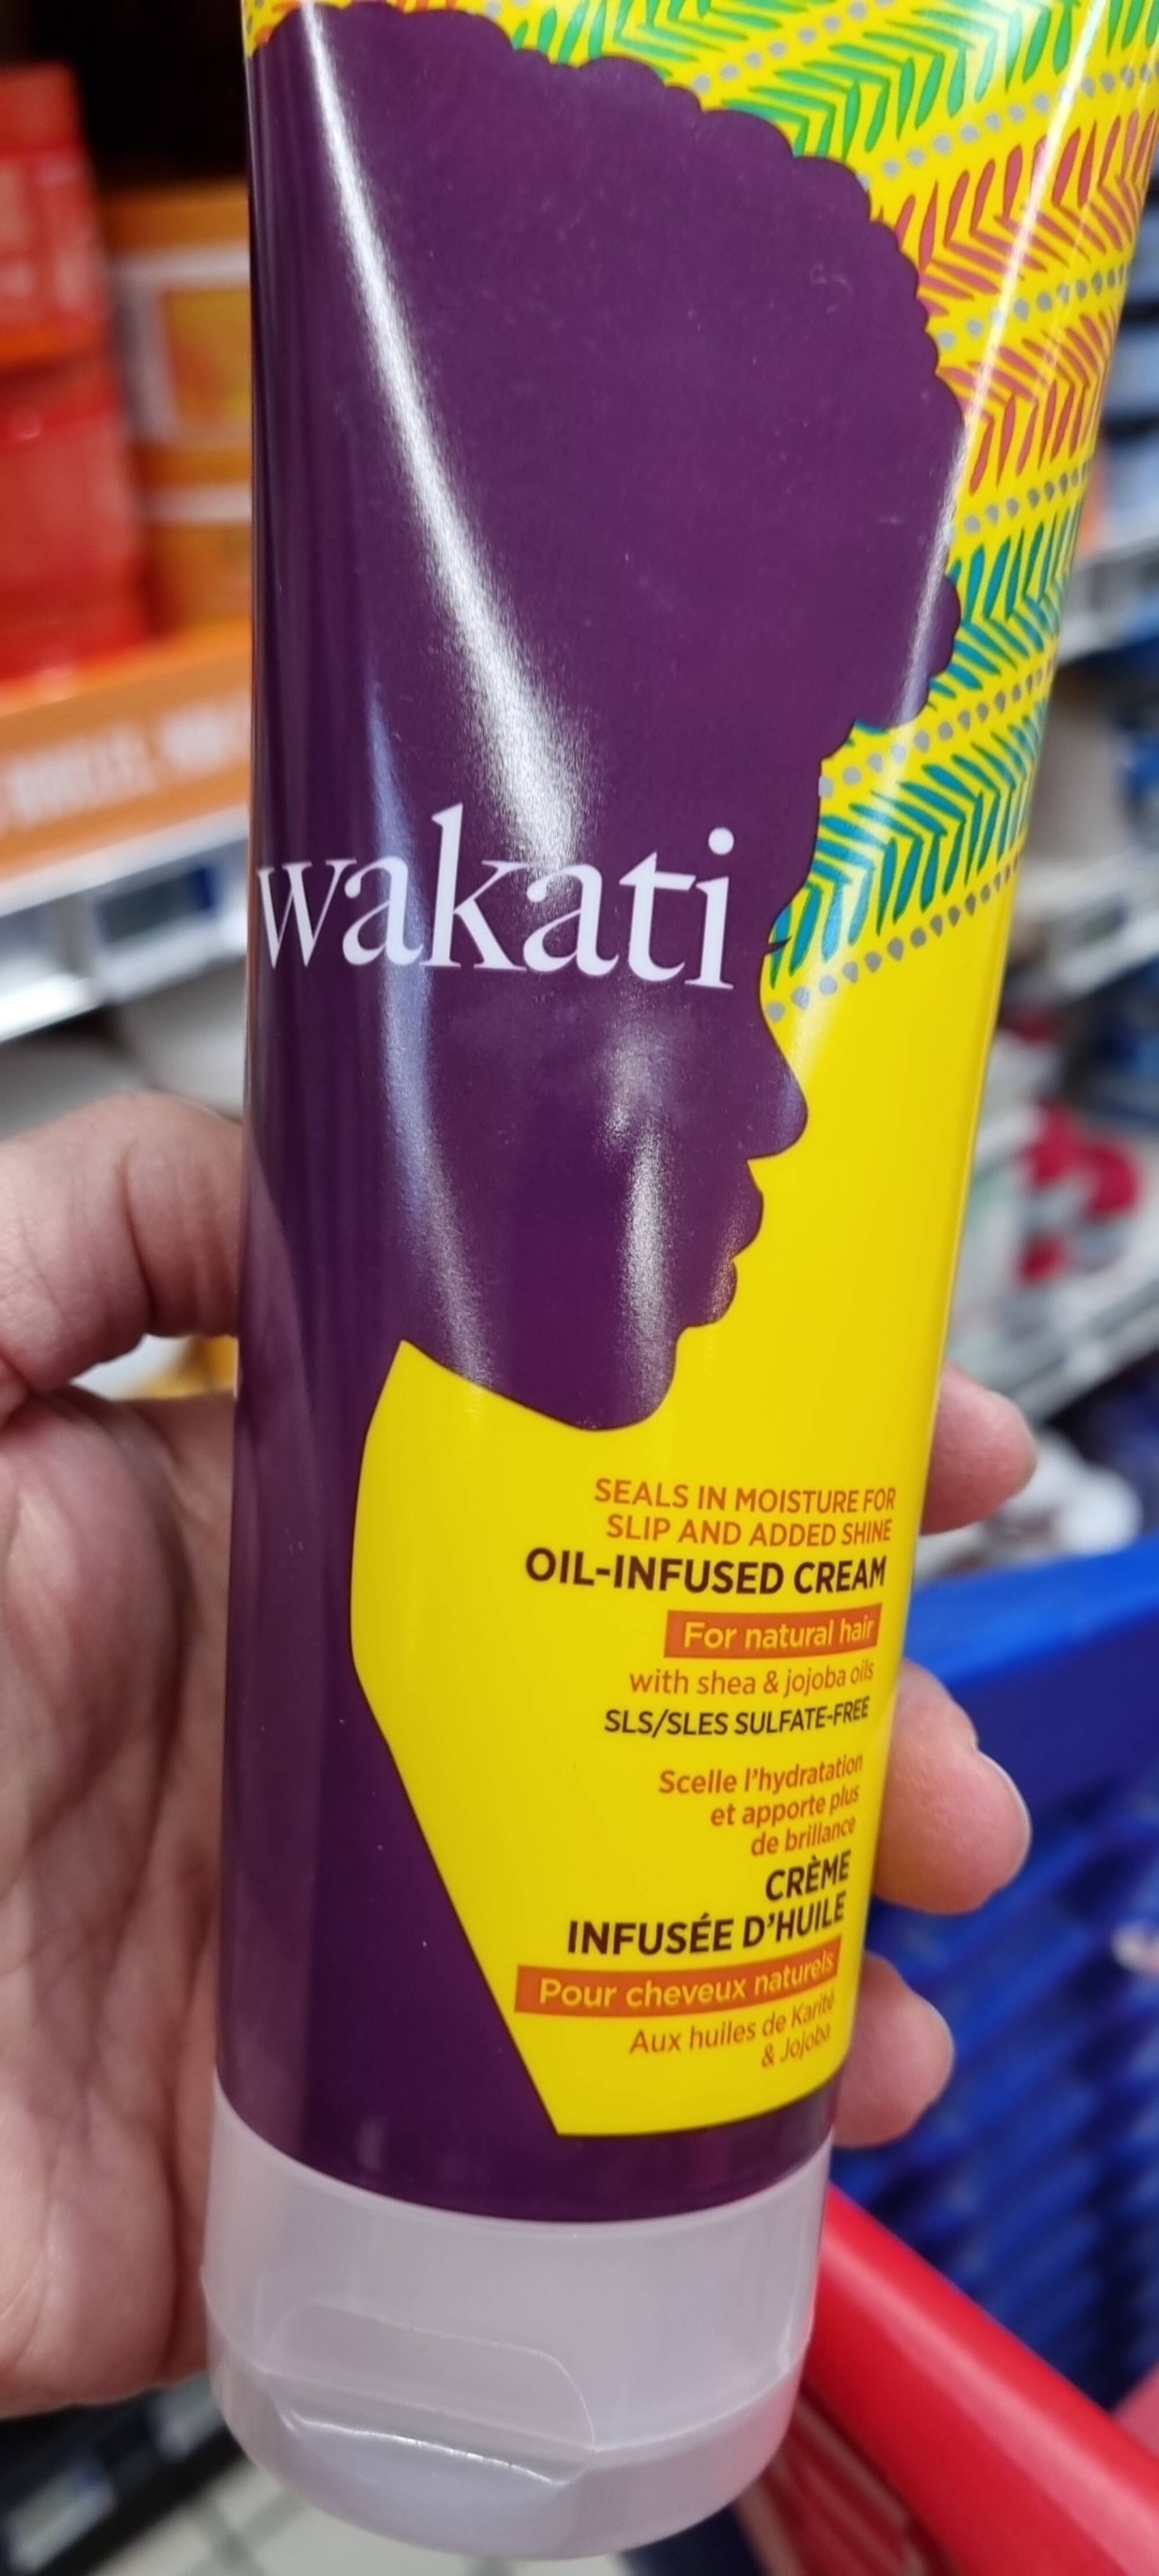 WAKATI - Crème infusée d'huile pour cheveux naturels